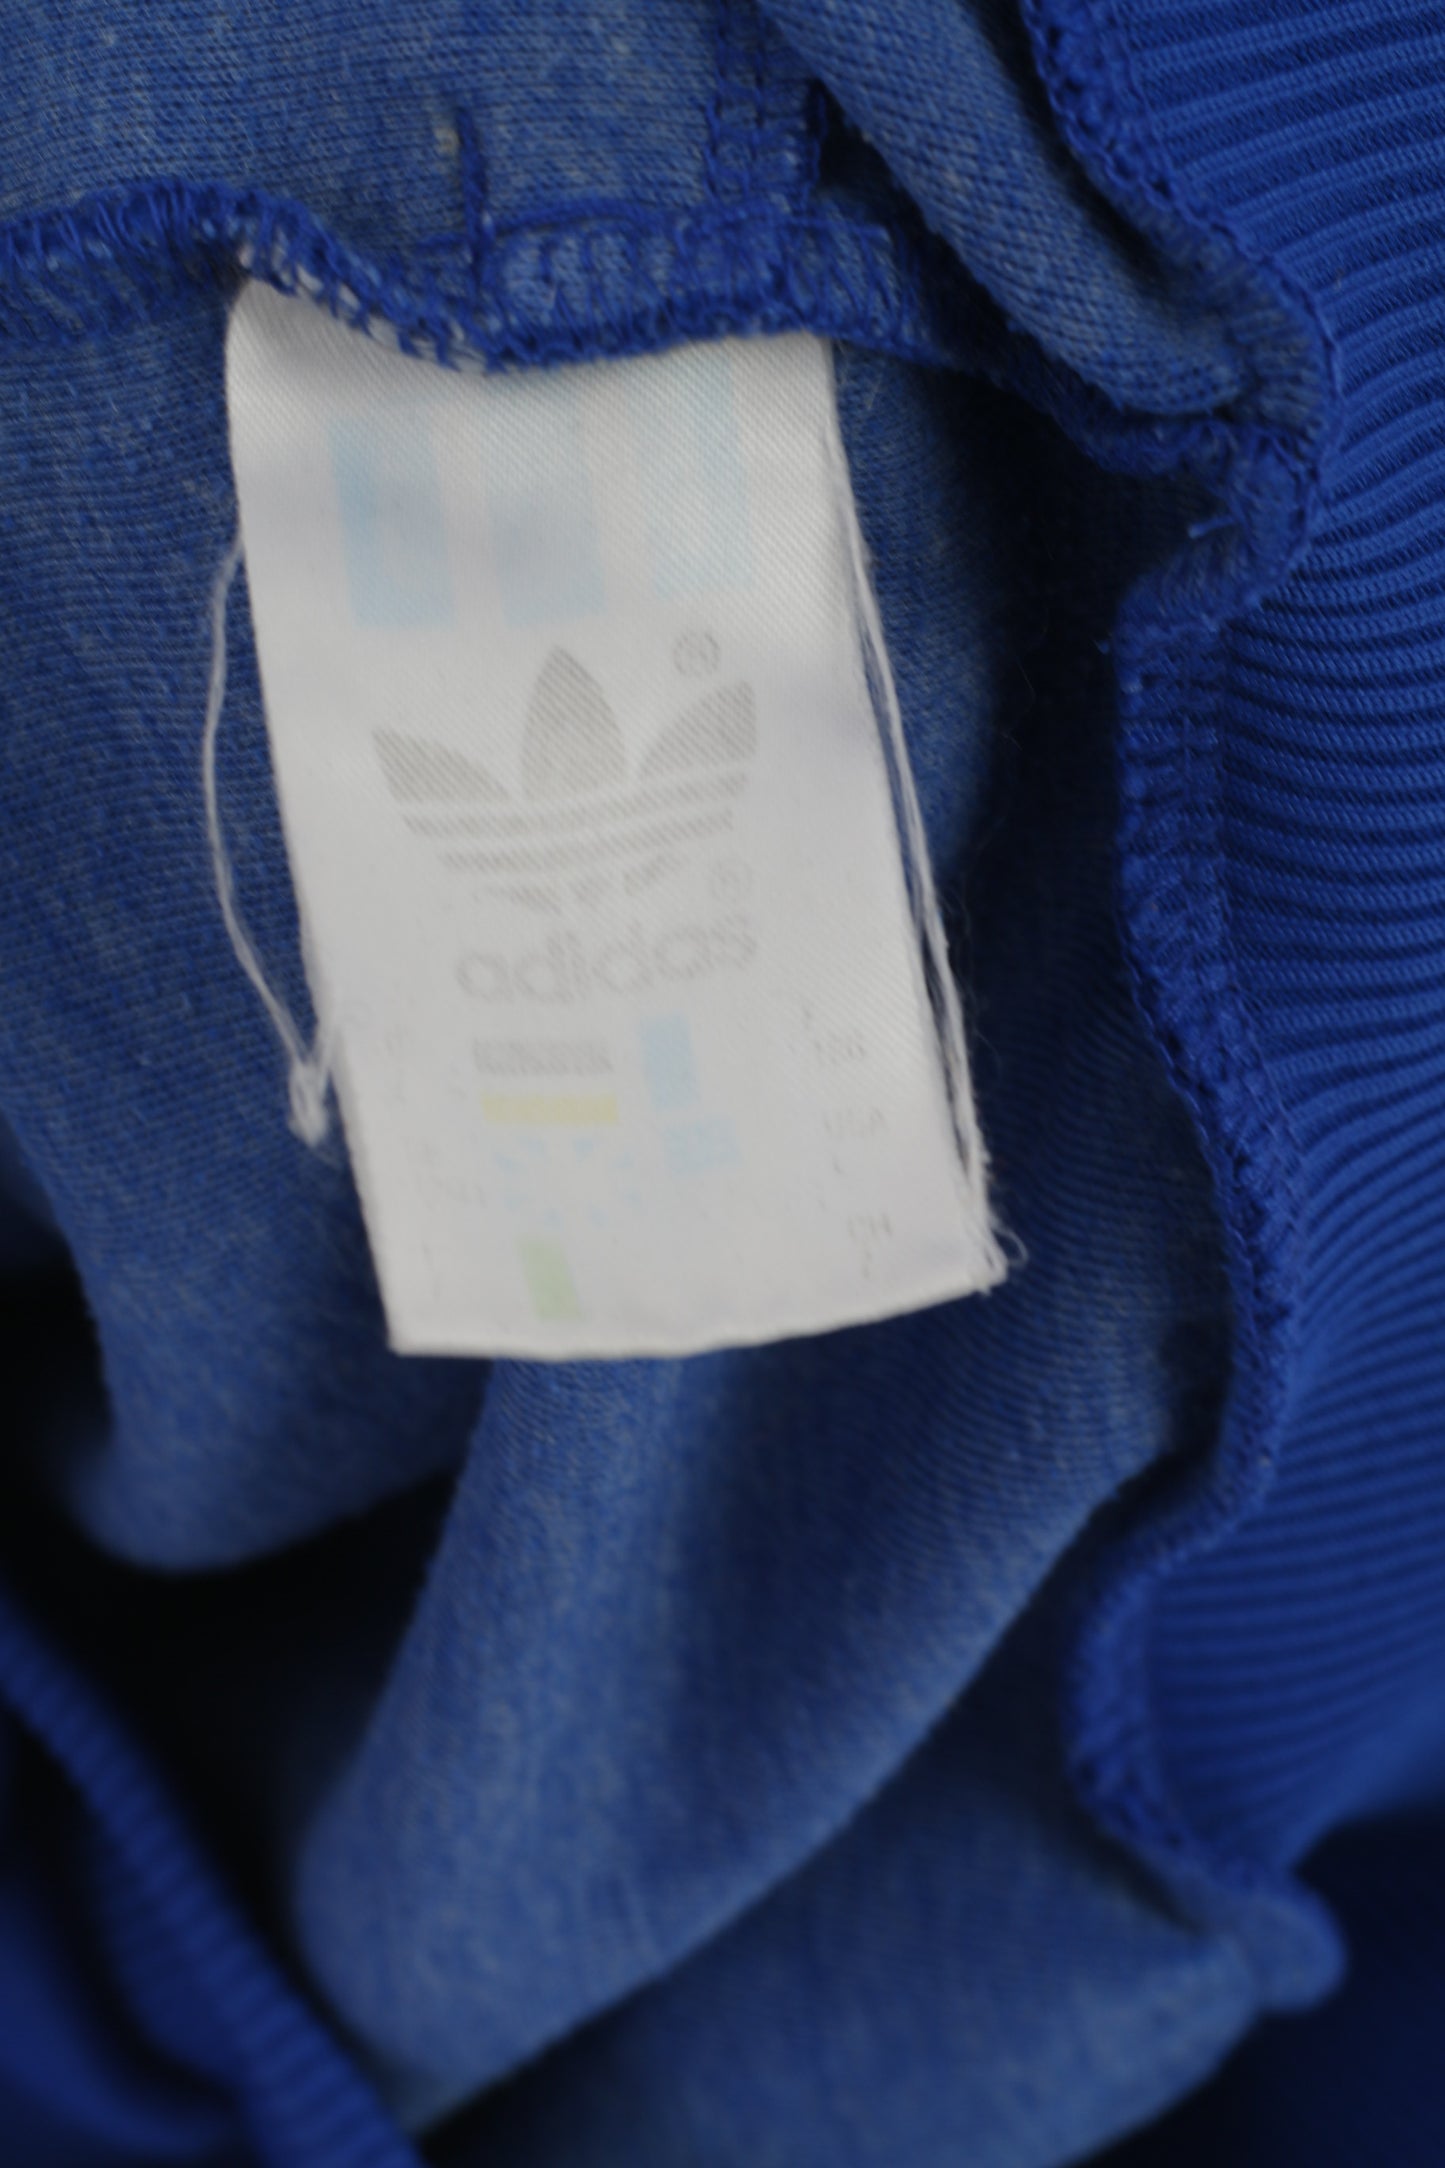 Adidas Men 186 M Sweatshirt Blue Vintage Schiwik Zip Up Sportswear Track Top